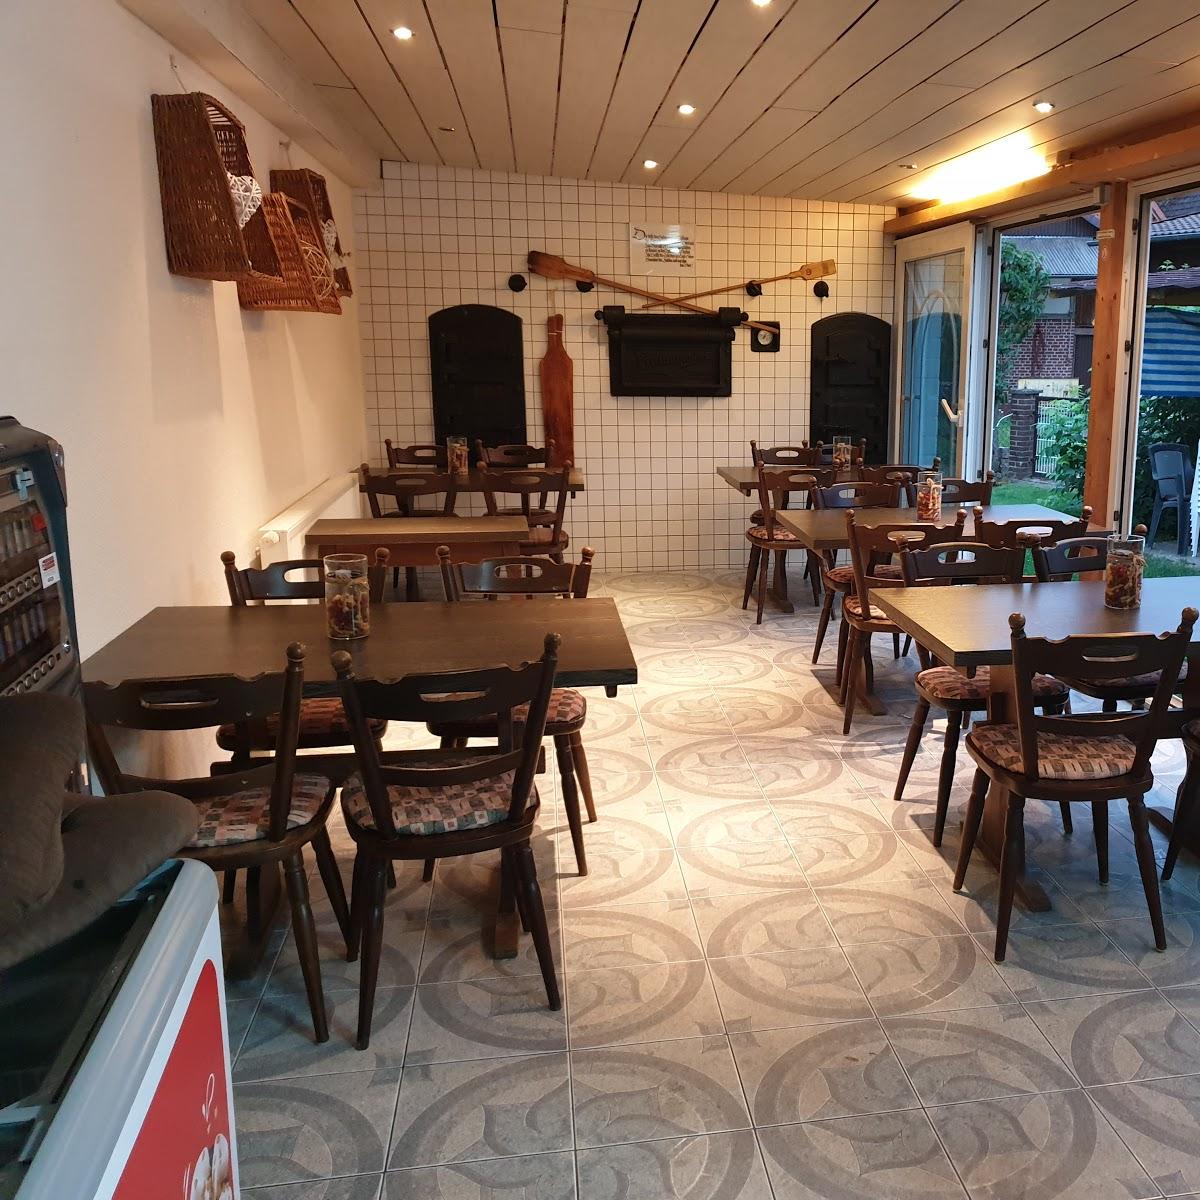 Restaurant "Rialto Eisdorf" in Bad Grund (Harz)